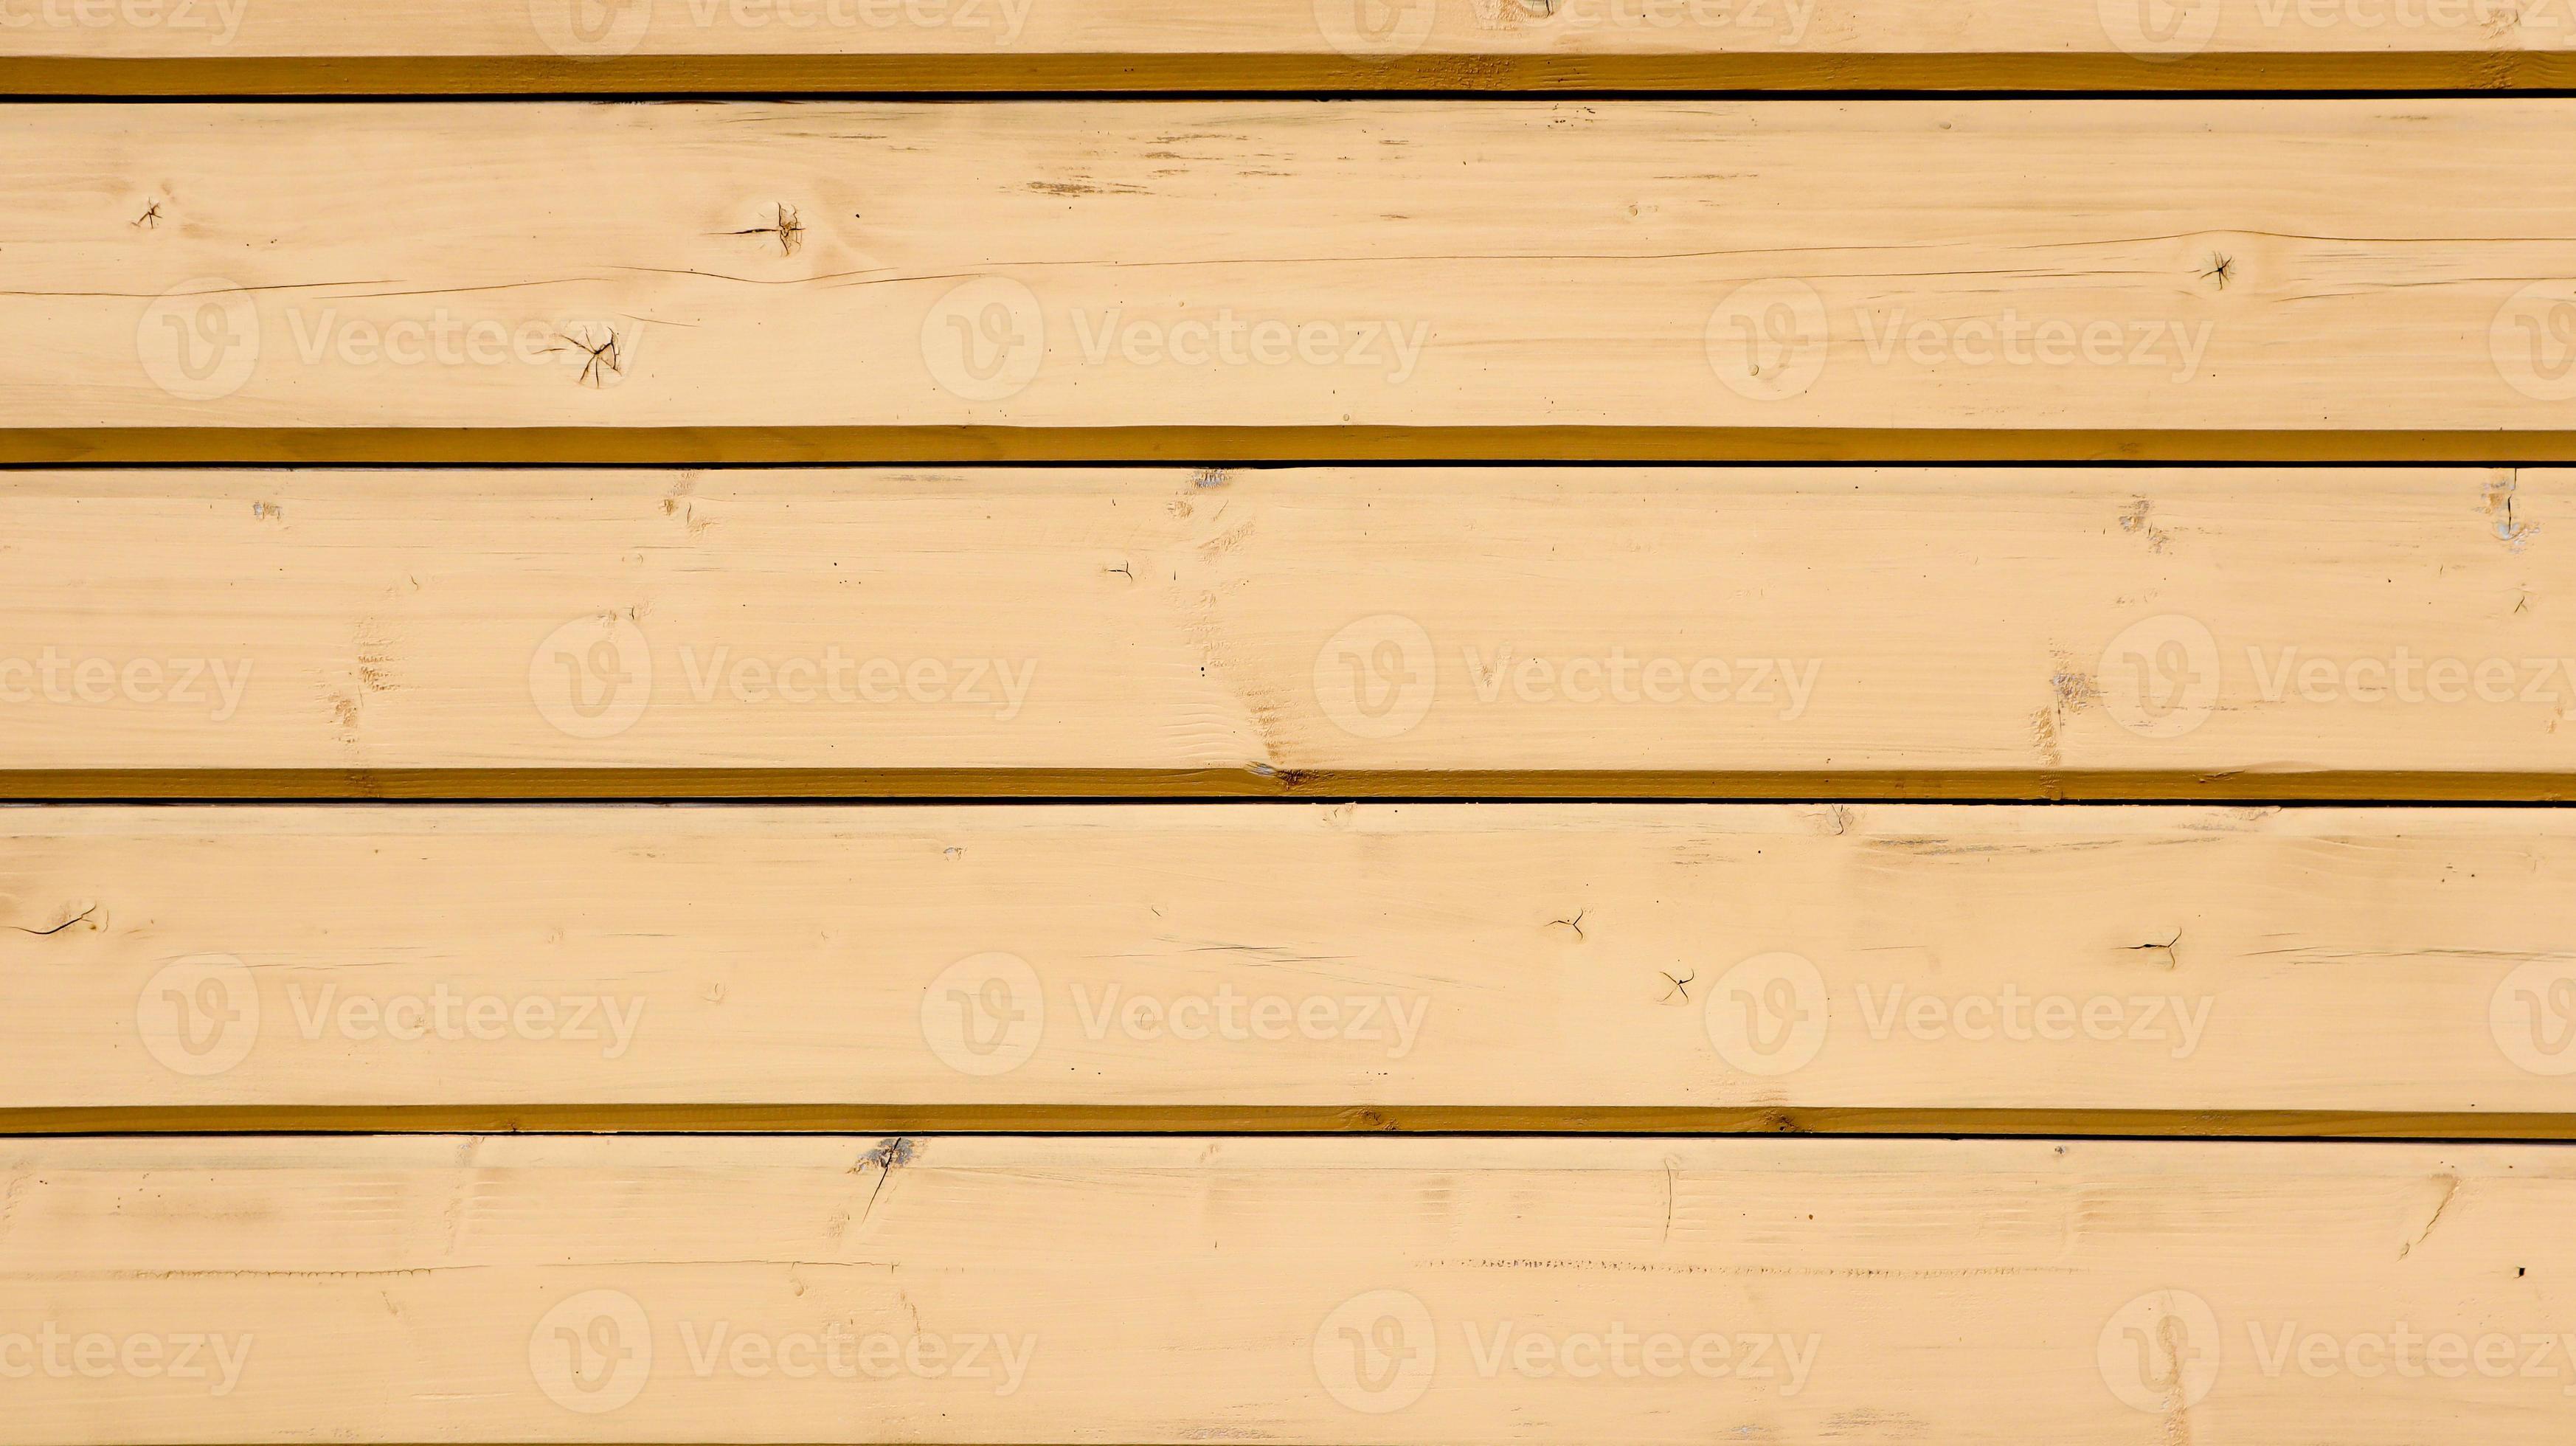 Nền gỗ cổ điển nâu mang đến cho không gian của bạn một vẻ đẹp đầy cổ điển và trang trọng. Hãy khám phá hình ảnh này để tìm kiếm những trải nghiệm độc đáo với nền gỗ cổ điển nâu tuyệt đẹp.